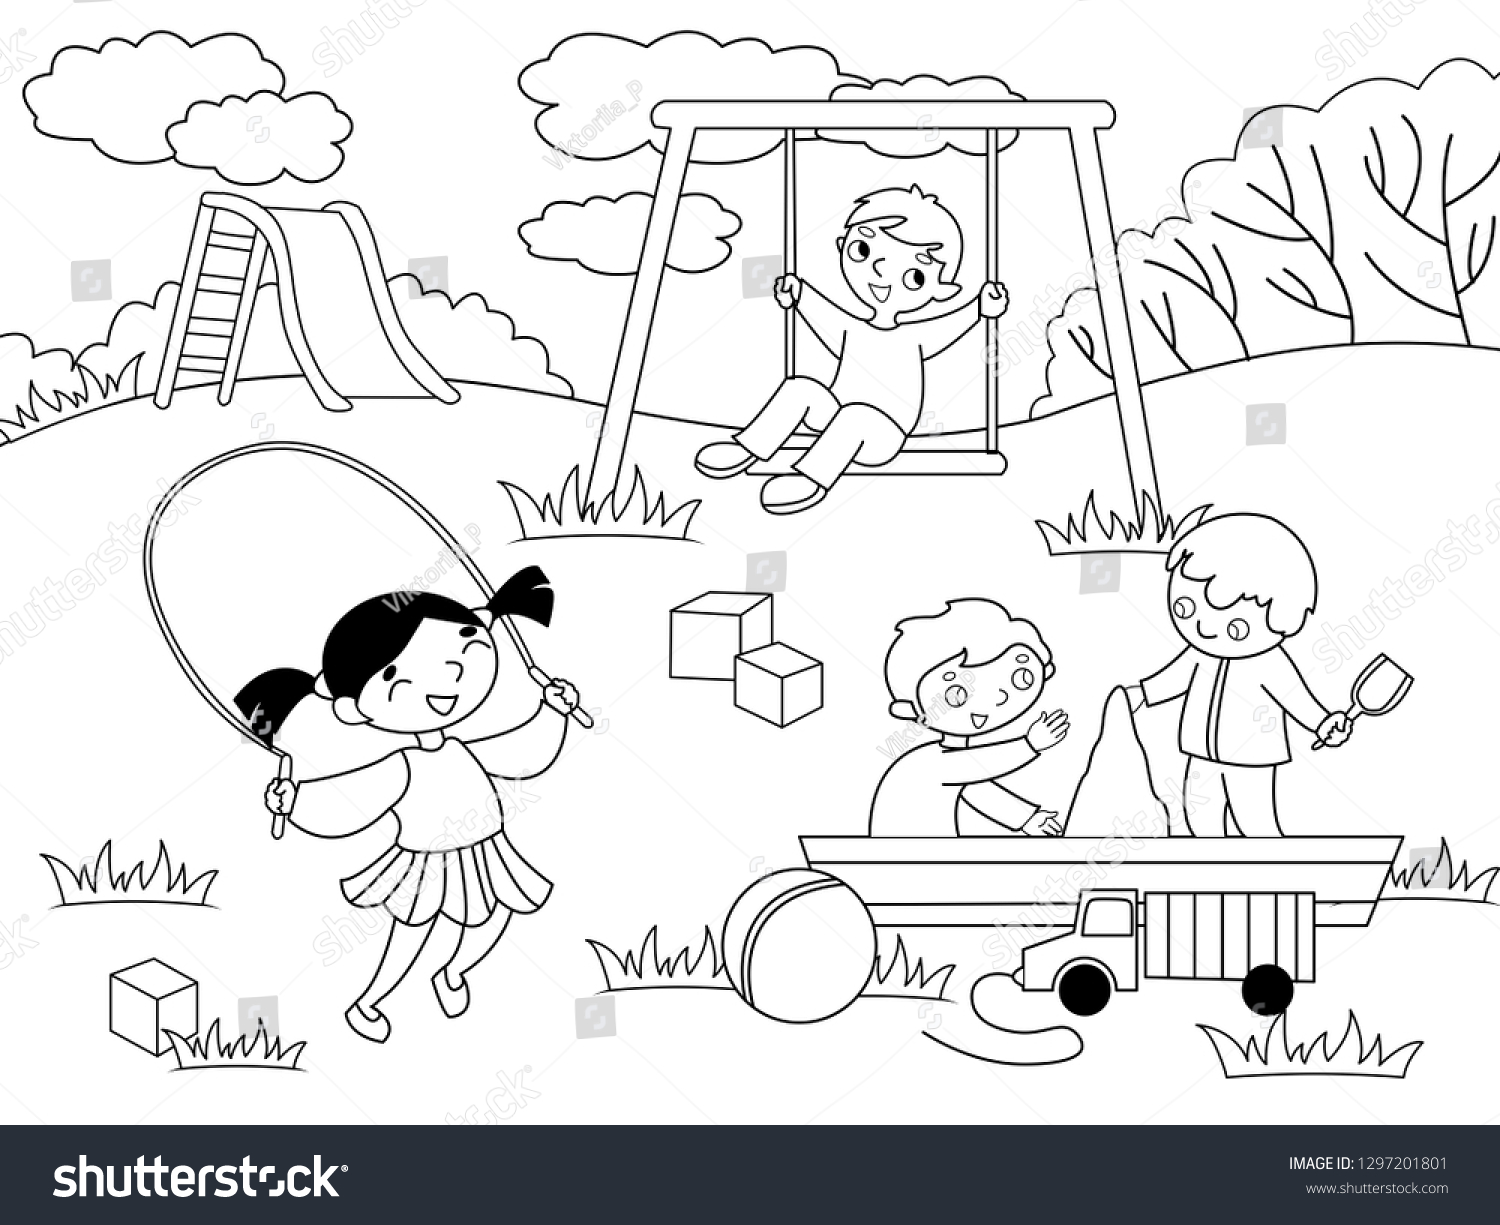 Дети на игровой площадке раскраска для детей